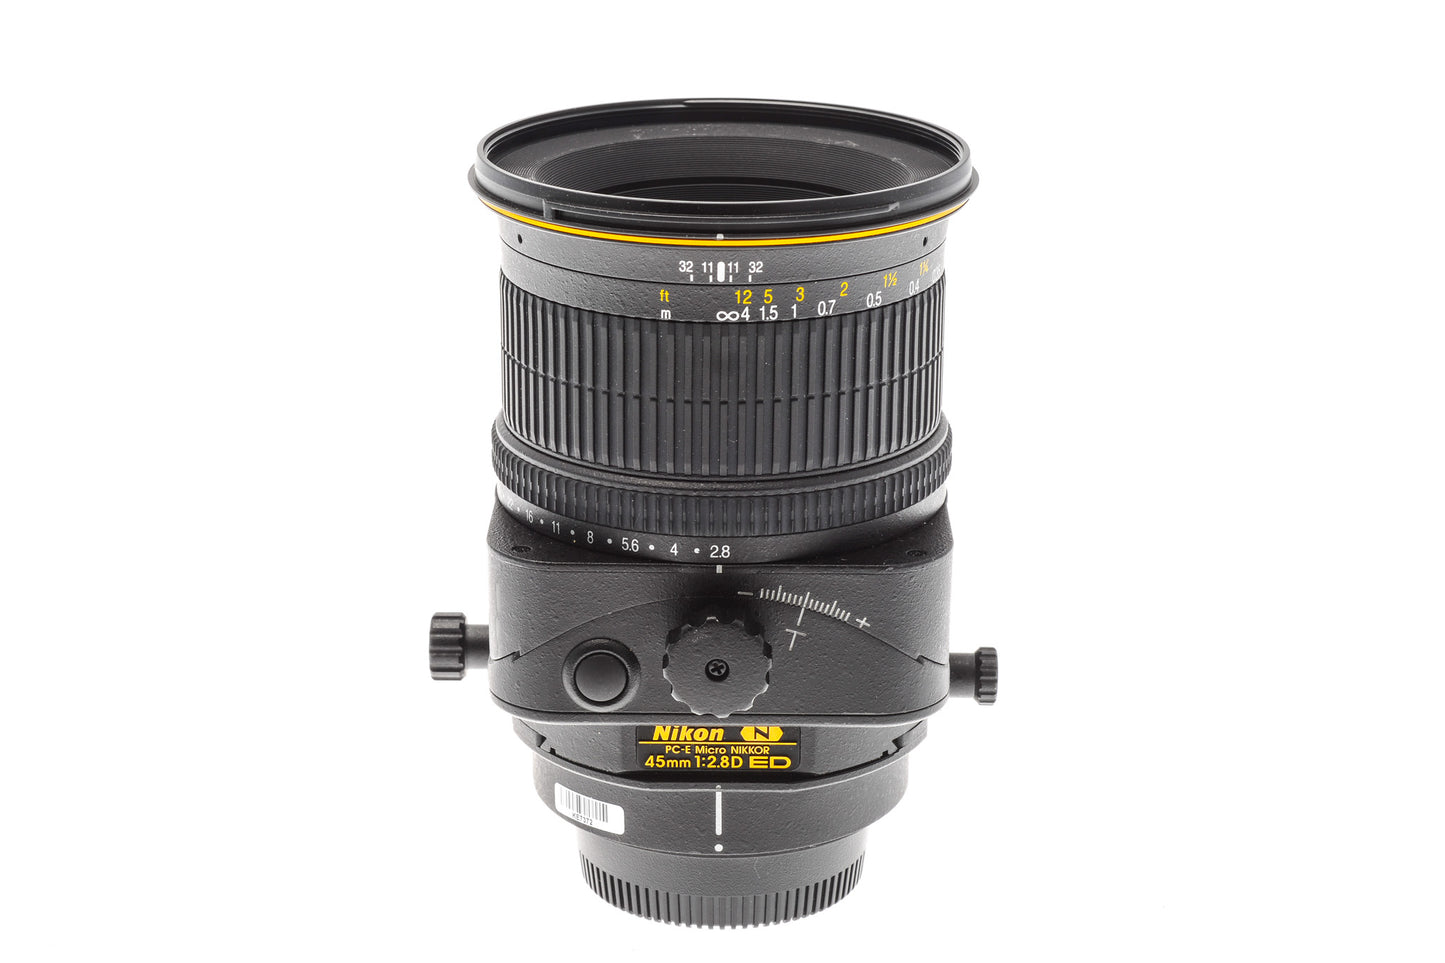 Nikon 45mm f2.8 D ED PC-E Micro-Nikkor - Lens